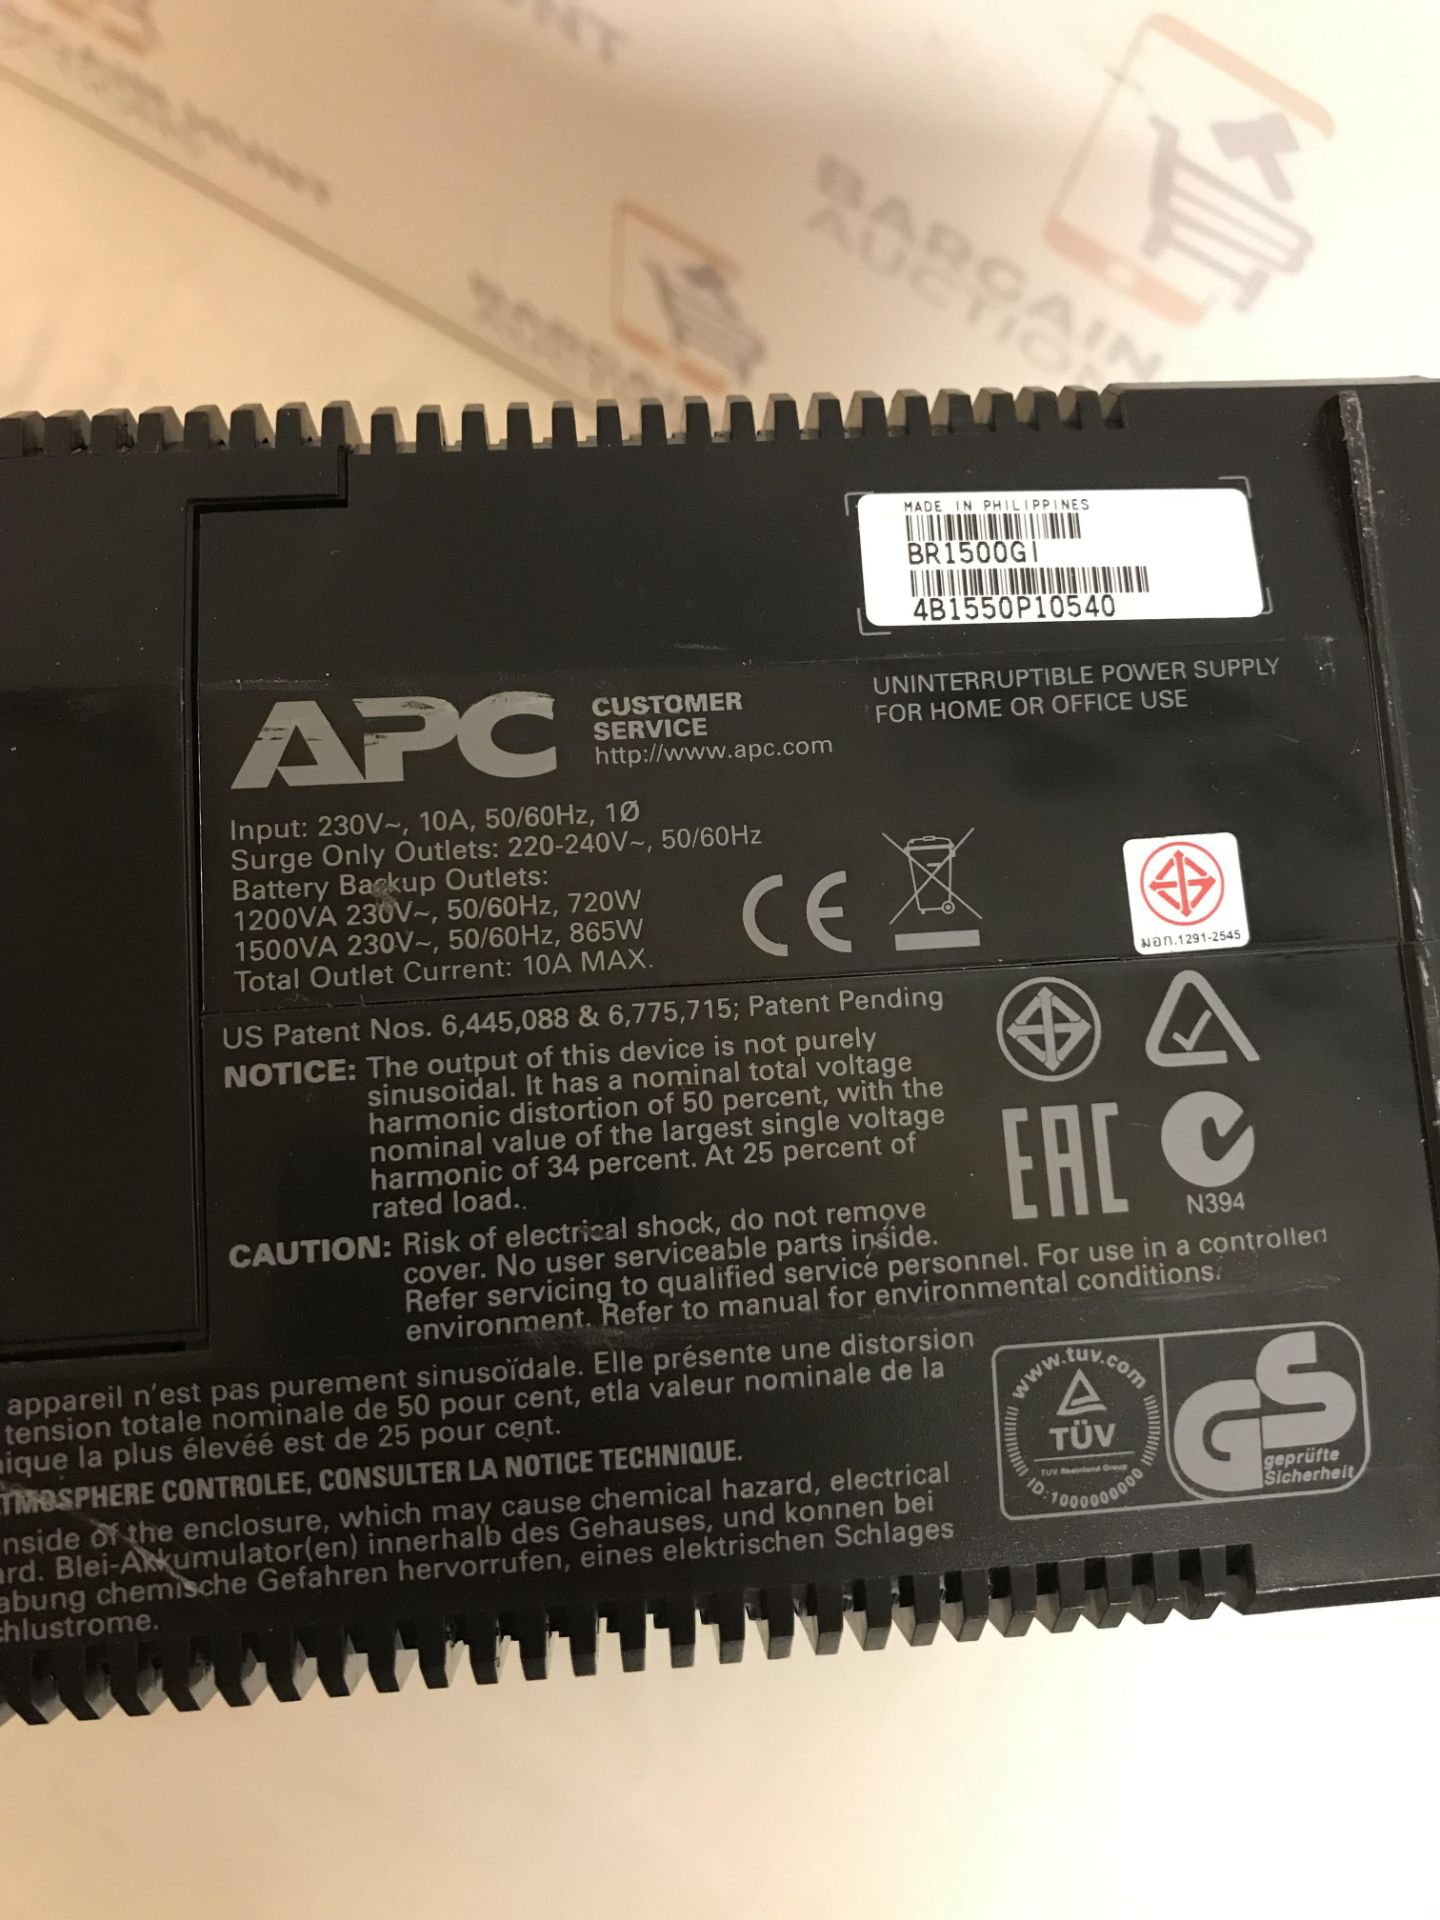 APC Back-UPS Pro 1500 Uninterruptible Power Supply - Image 2 of 2